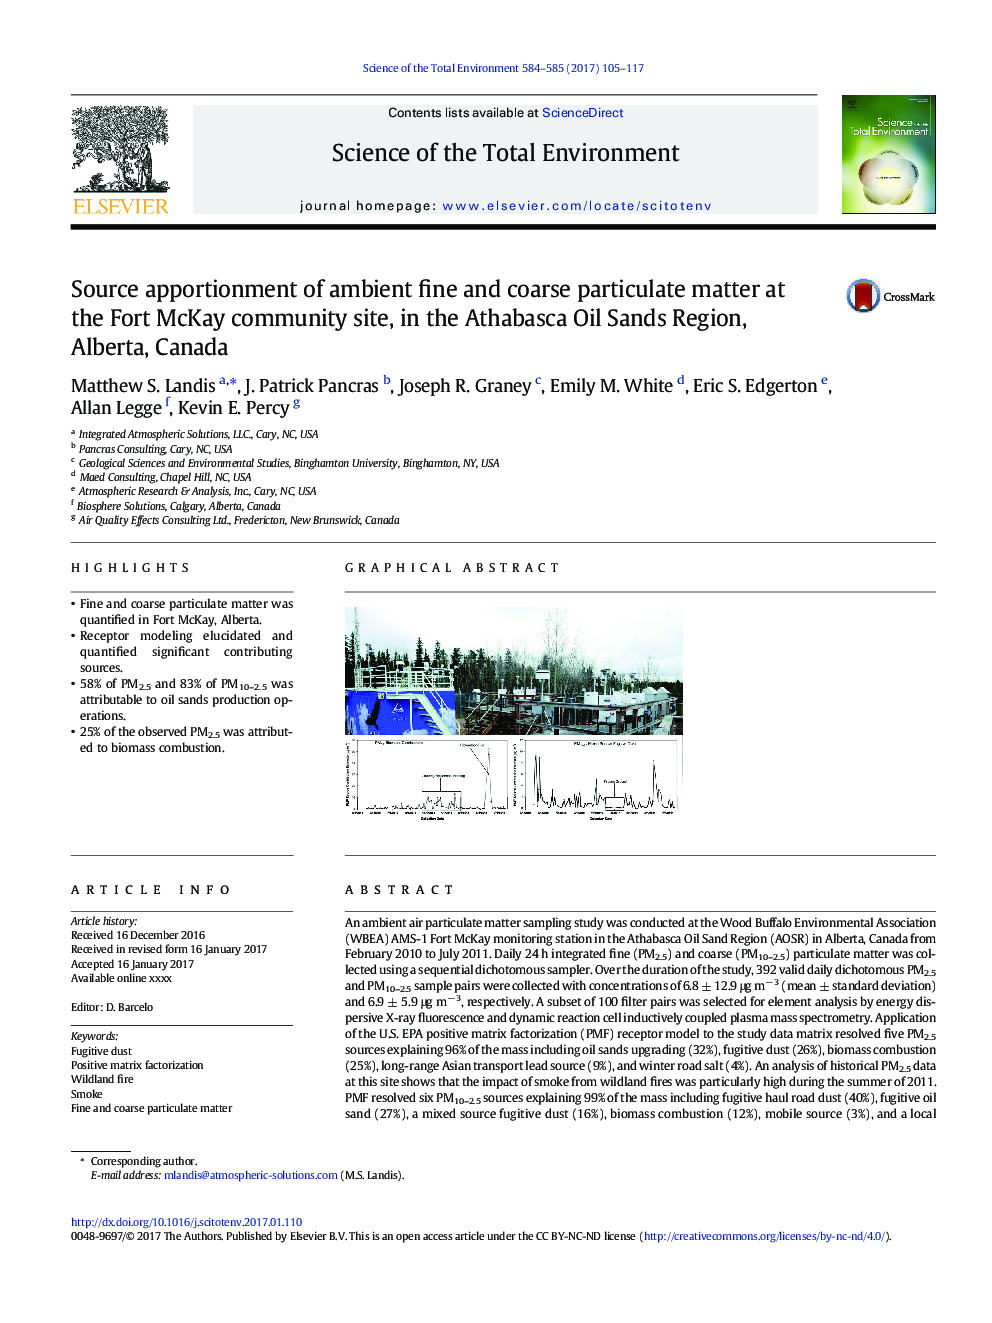 تقسیم منابع ذرات ریز و درشت محیطی در سایت جامع فورت مک کی در منطقه شنهای نفتی اتاباسکا، آلبرتا، کانادا 